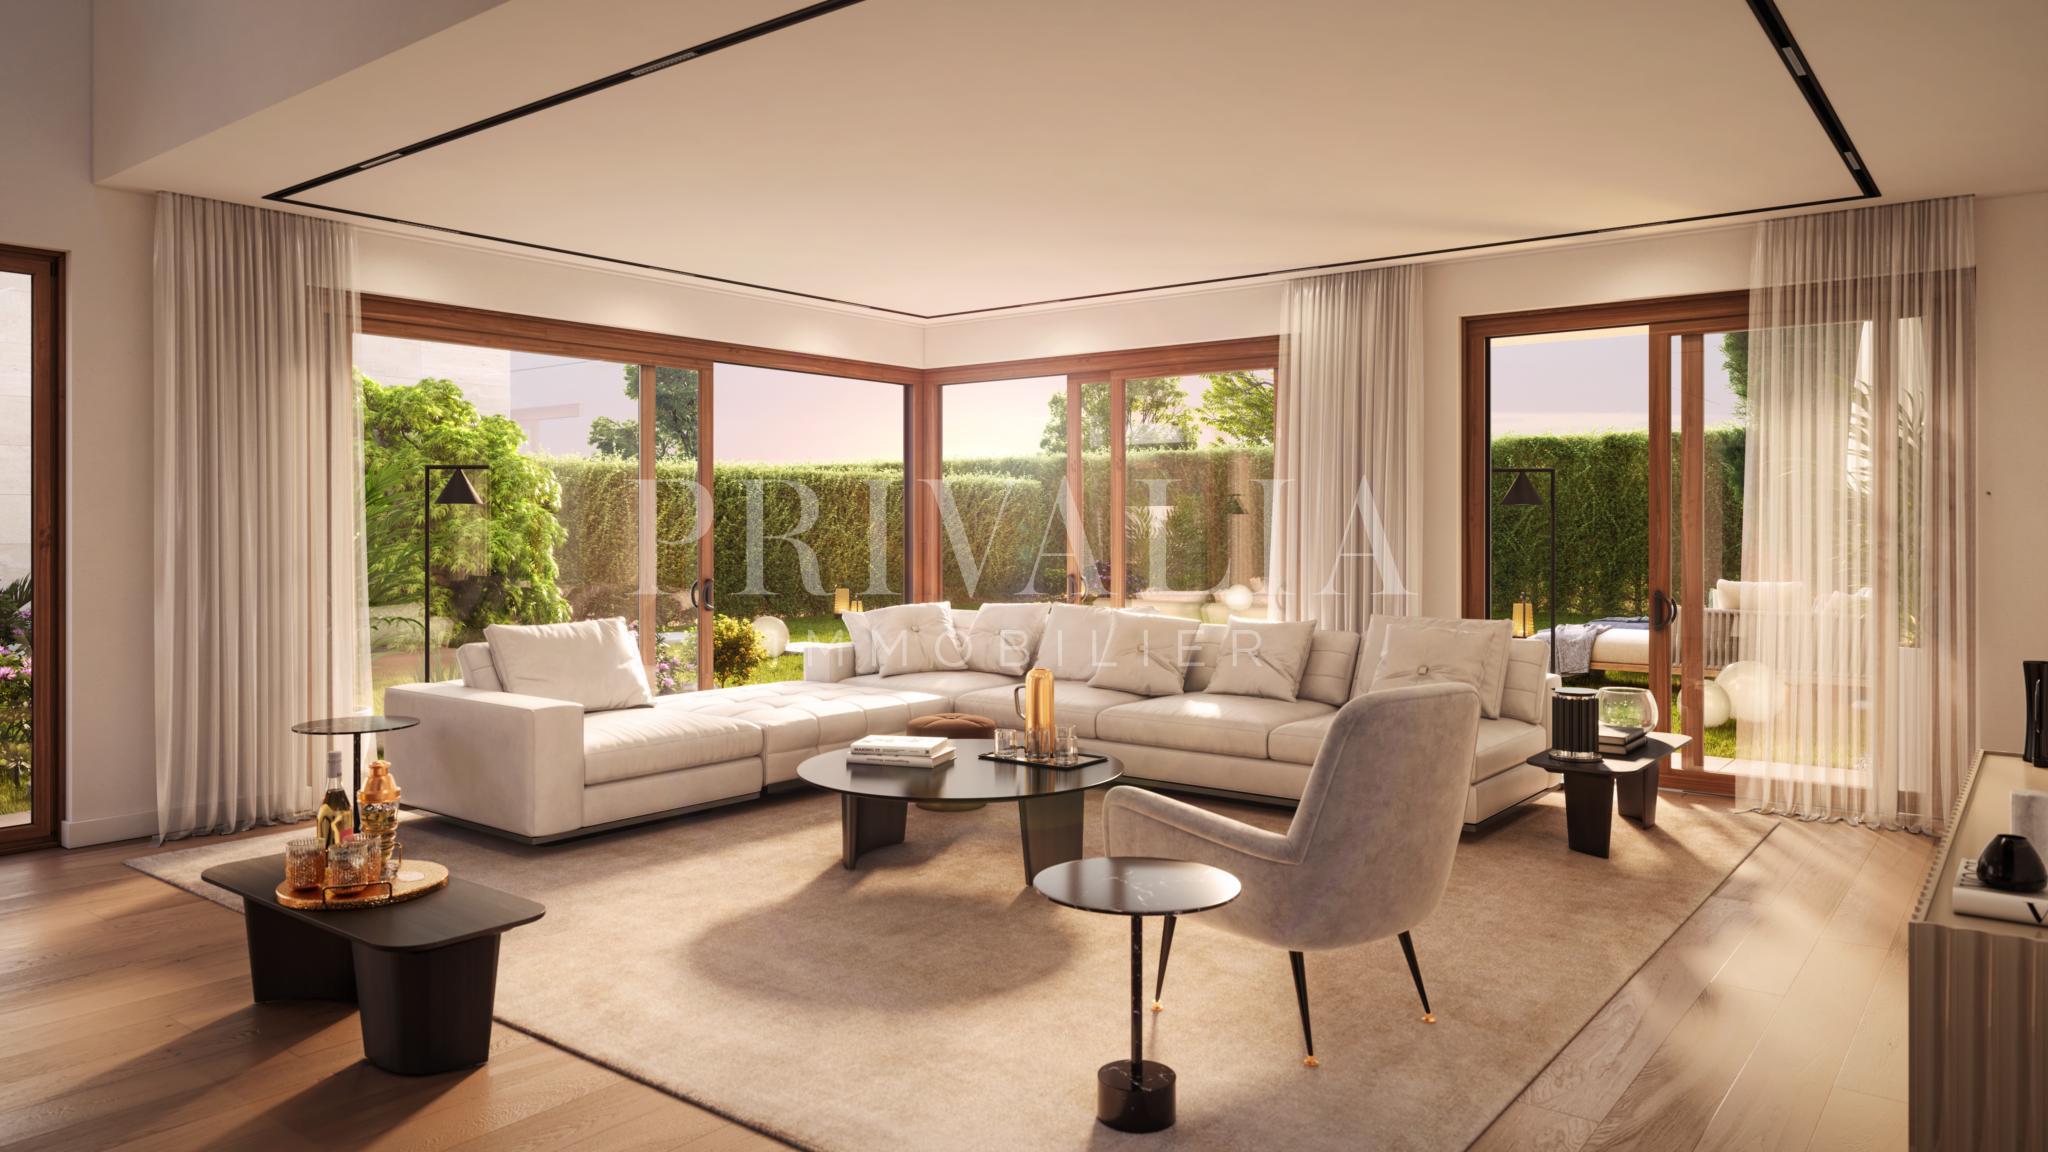 PrivaliaLAST VILLA AVAILABLE – Luxury semi-detached villa 297 m2